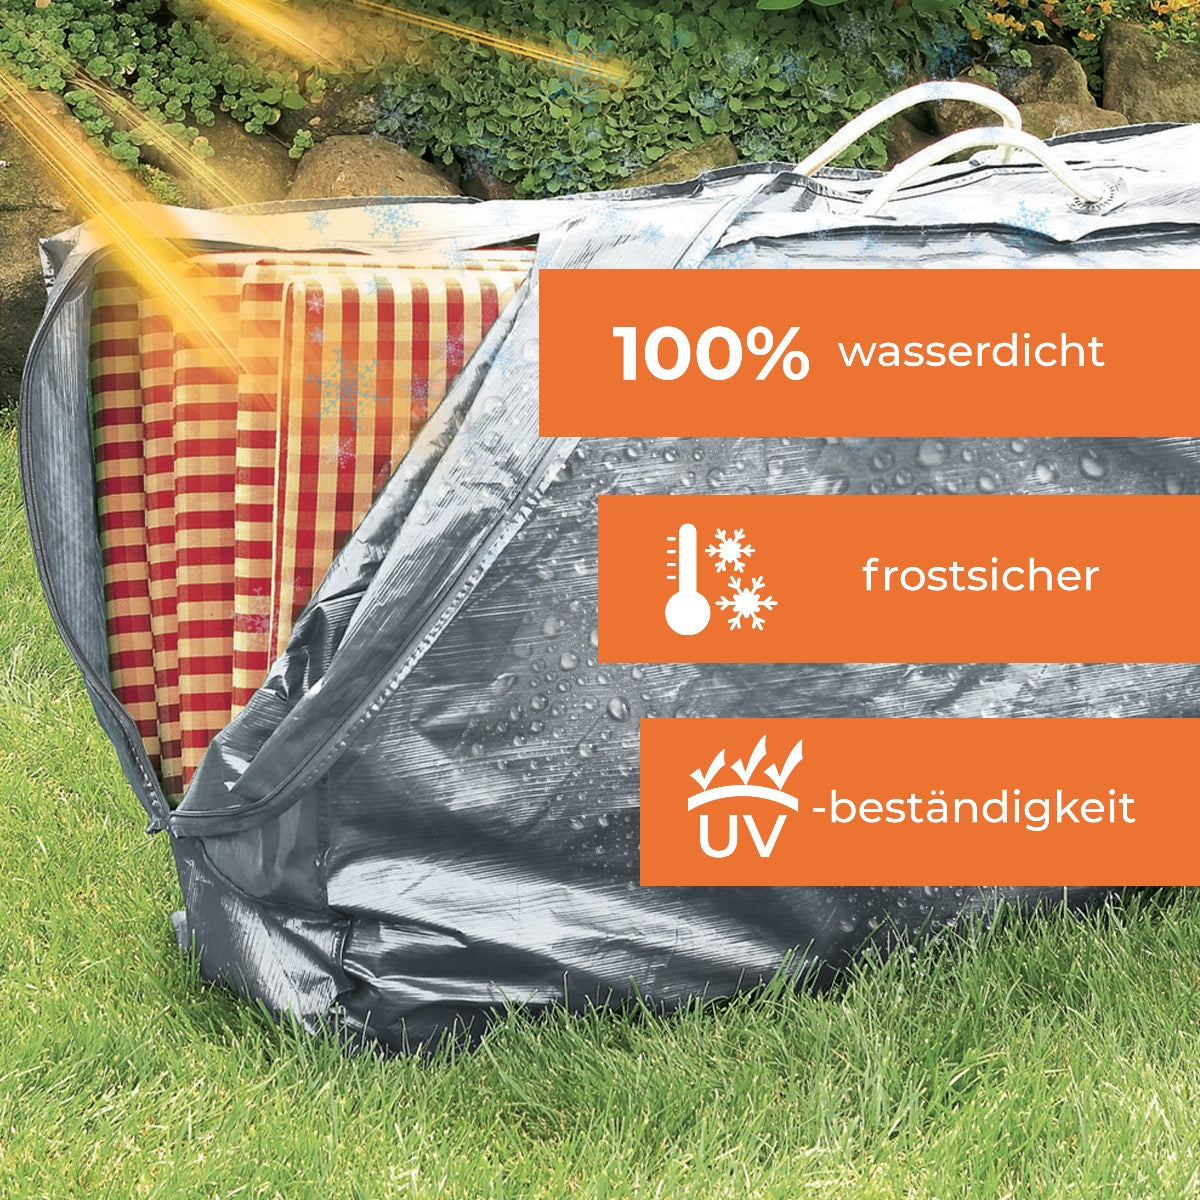 Rainexo Aufbewahrungshülle für Sitzkissen und Hochlehner-Auflagen - silbergrau - 100% wasserdicht, frostsicher und UV-beständig